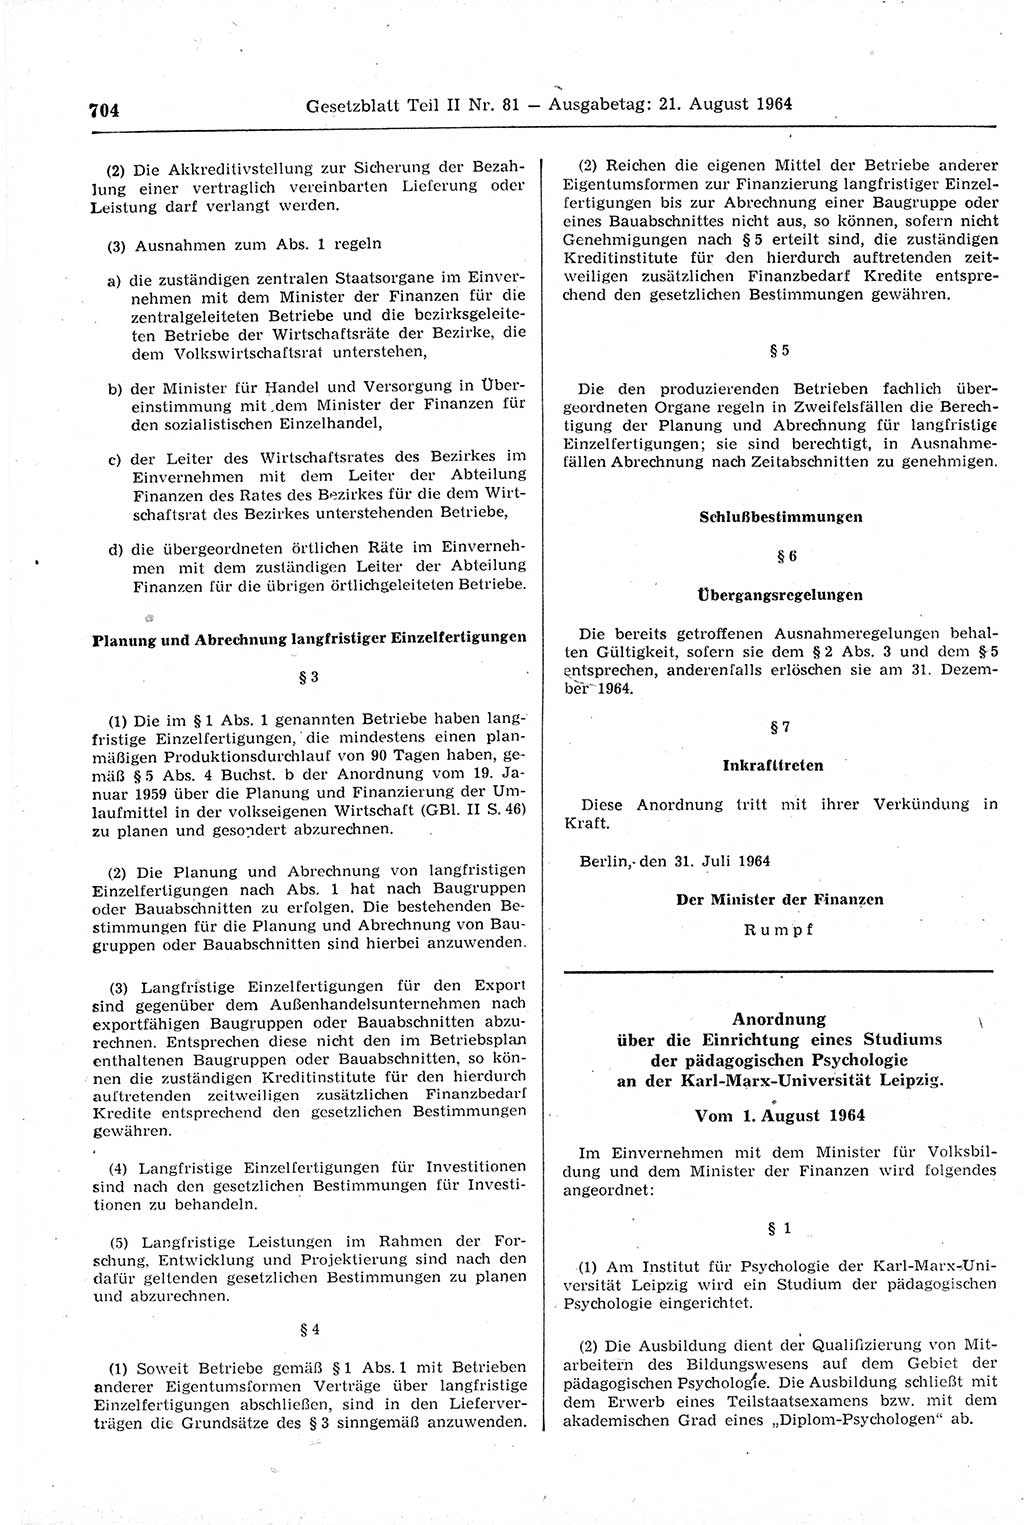 Gesetzblatt (GBl.) der Deutschen Demokratischen Republik (DDR) Teil ⅠⅠ 1964, Seite 704 (GBl. DDR ⅠⅠ 1964, S. 704)